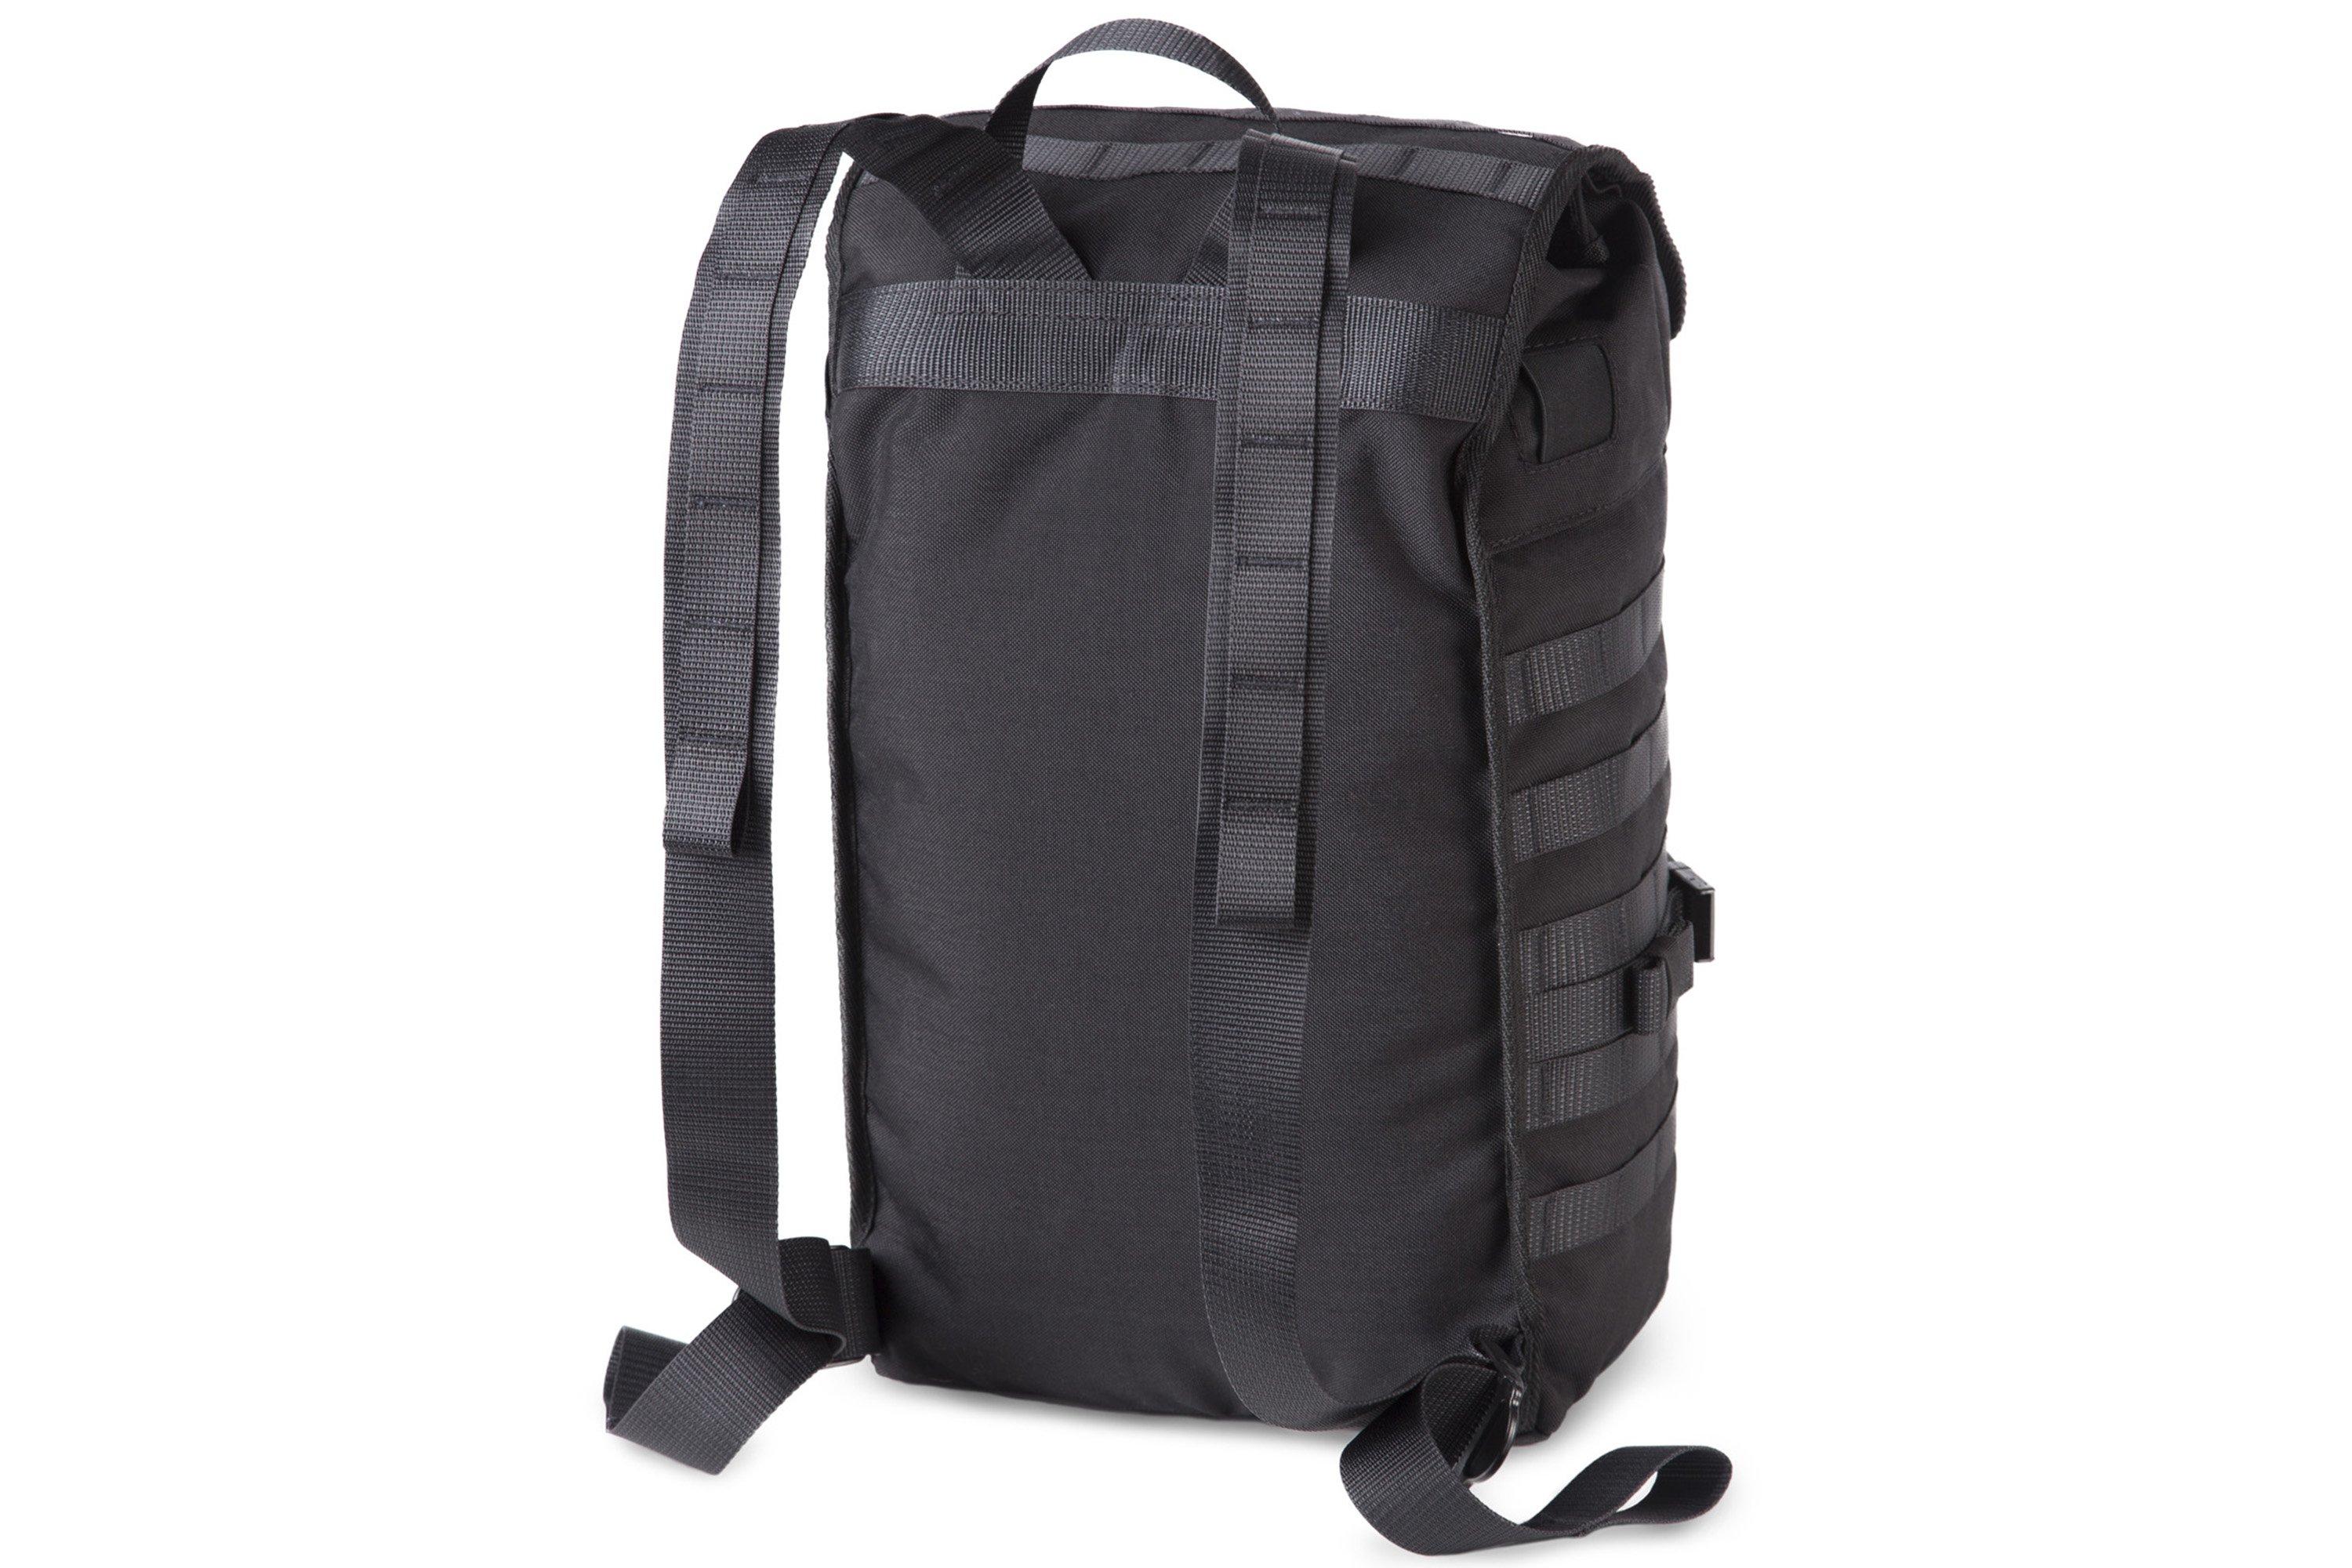 Savotta Jääkäri S backpack 102025109 Black Cordura 1000, 20 L ...